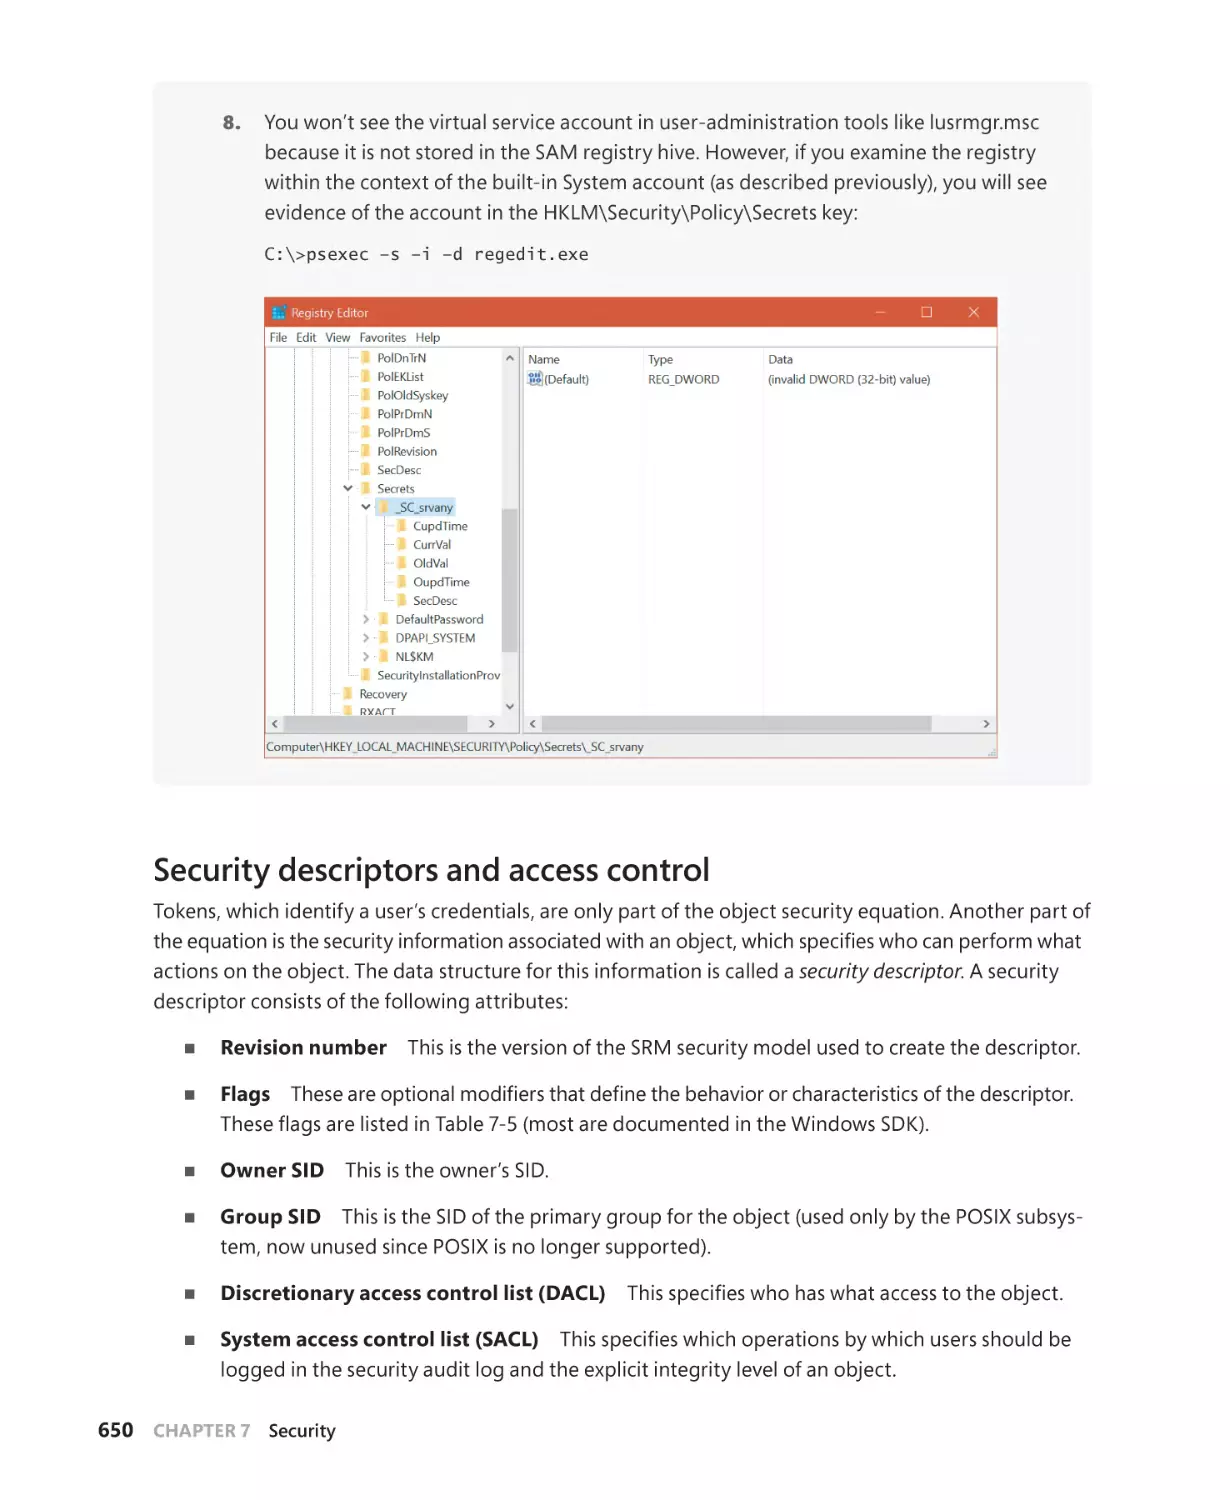 Security descriptors and access control